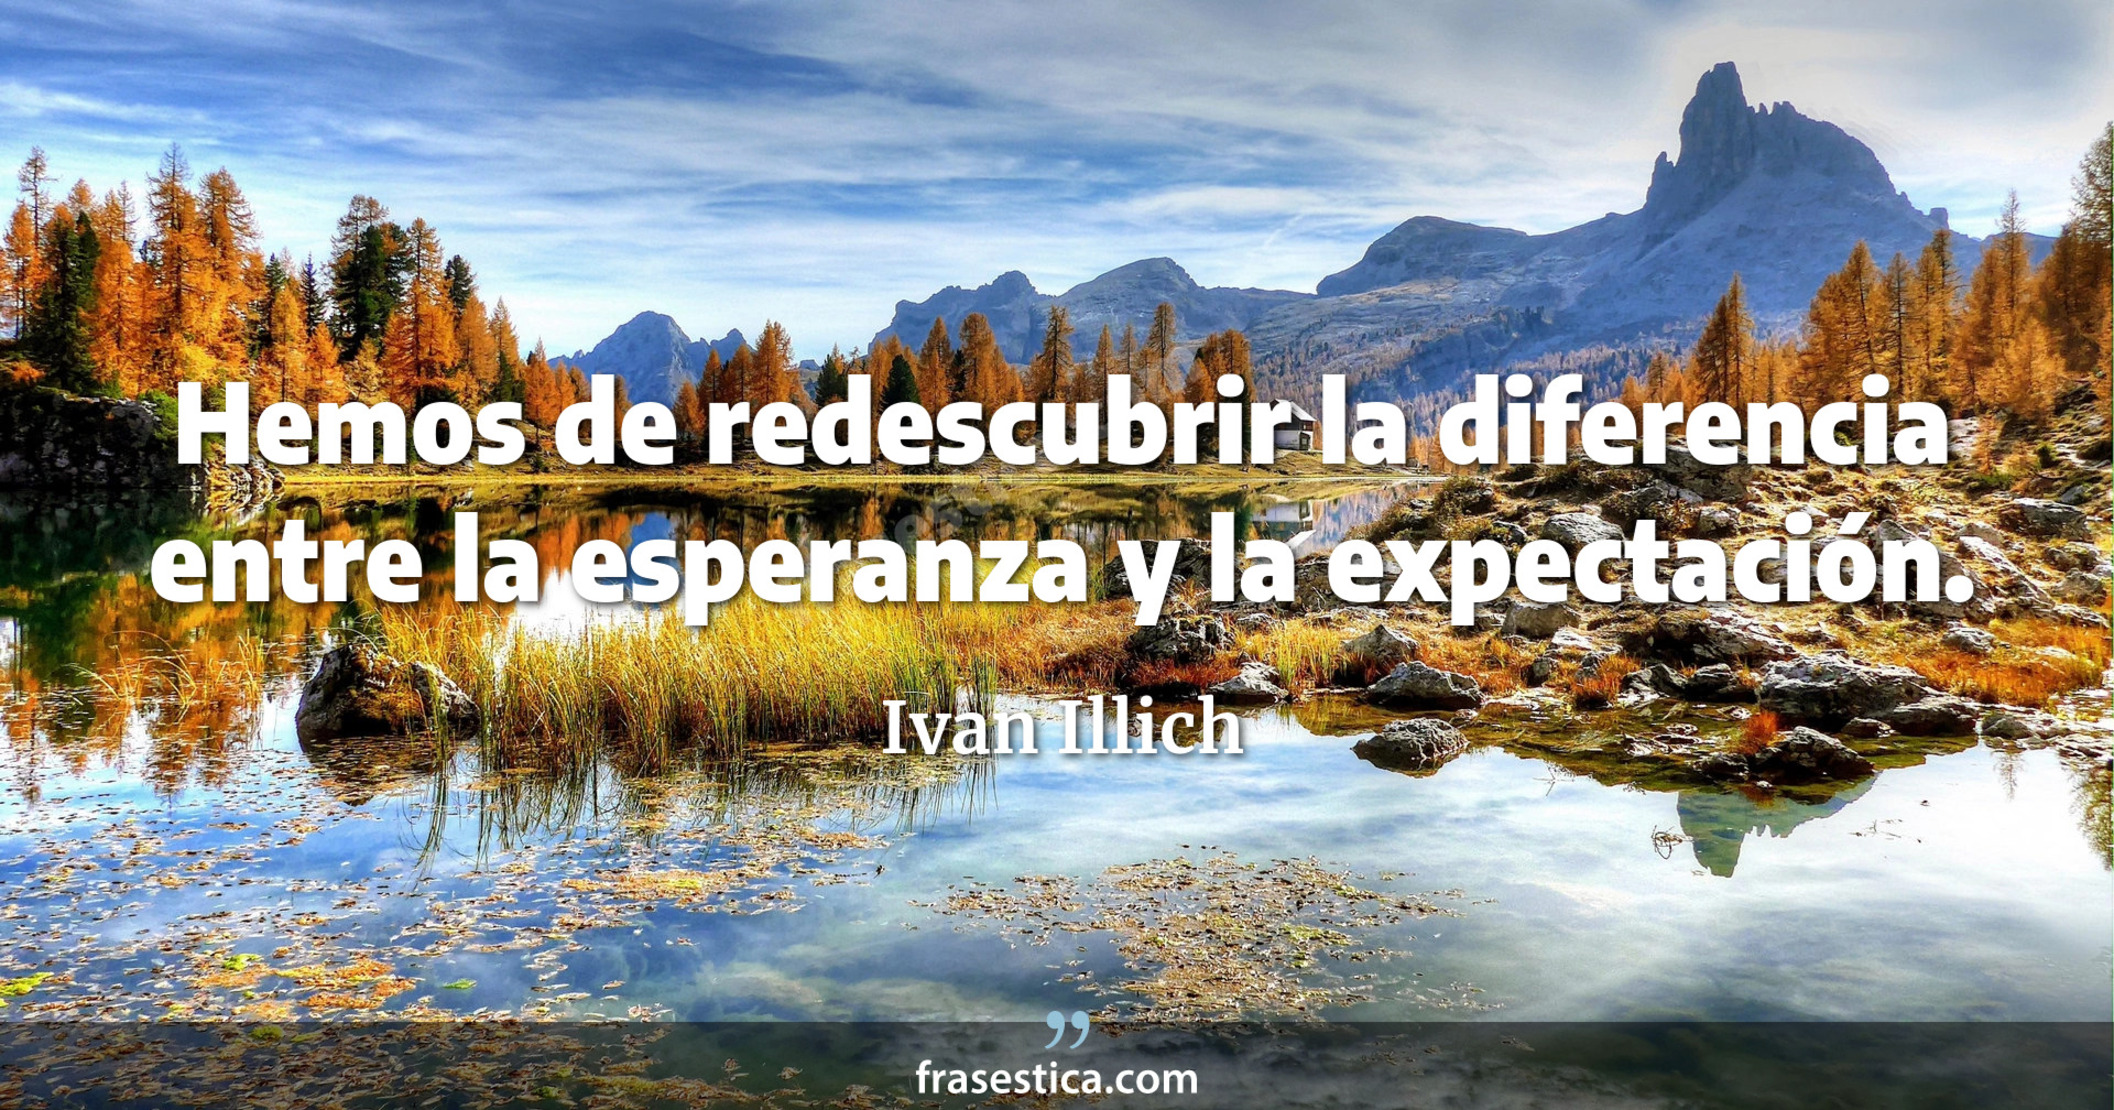 Hemos de redescubrir la diferencia entre la esperanza y la expectación. - Ivan Illich